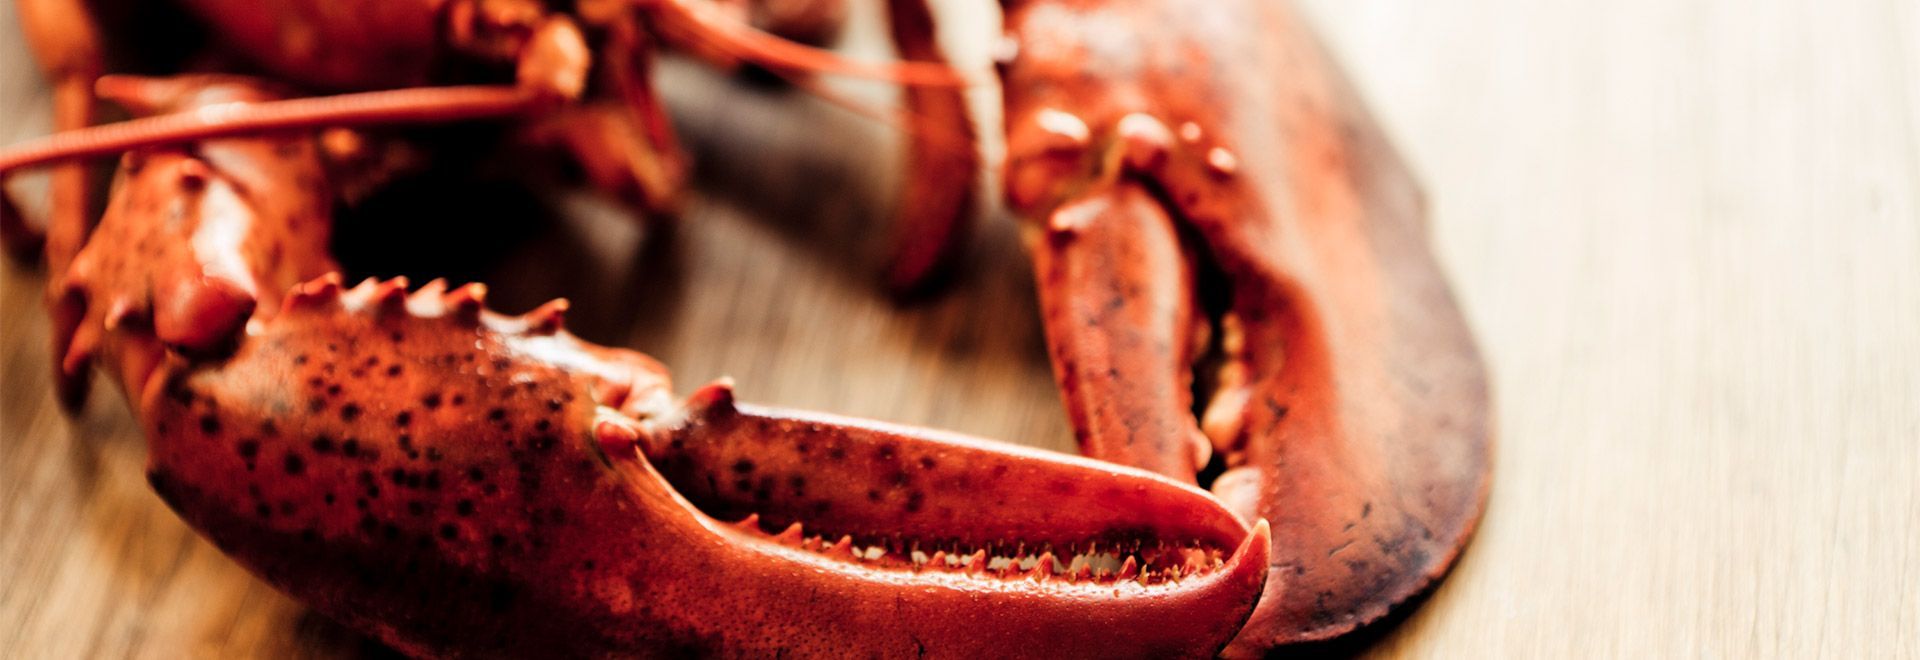 Conseils pour la sélection, la cuisson et la consommation de homard